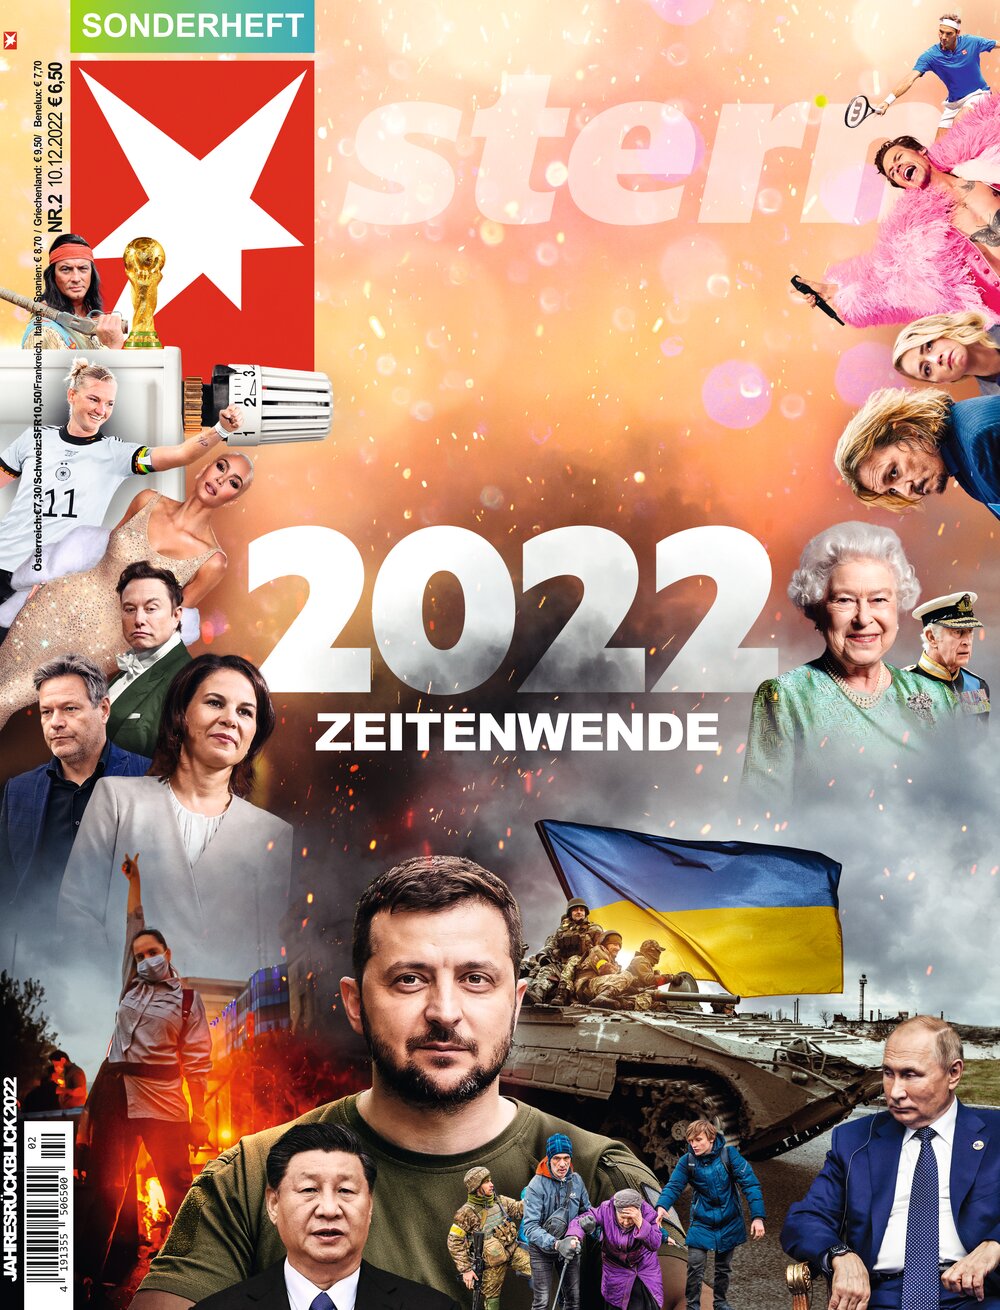 stern Sonderheft "Jahresrückblick 2022"